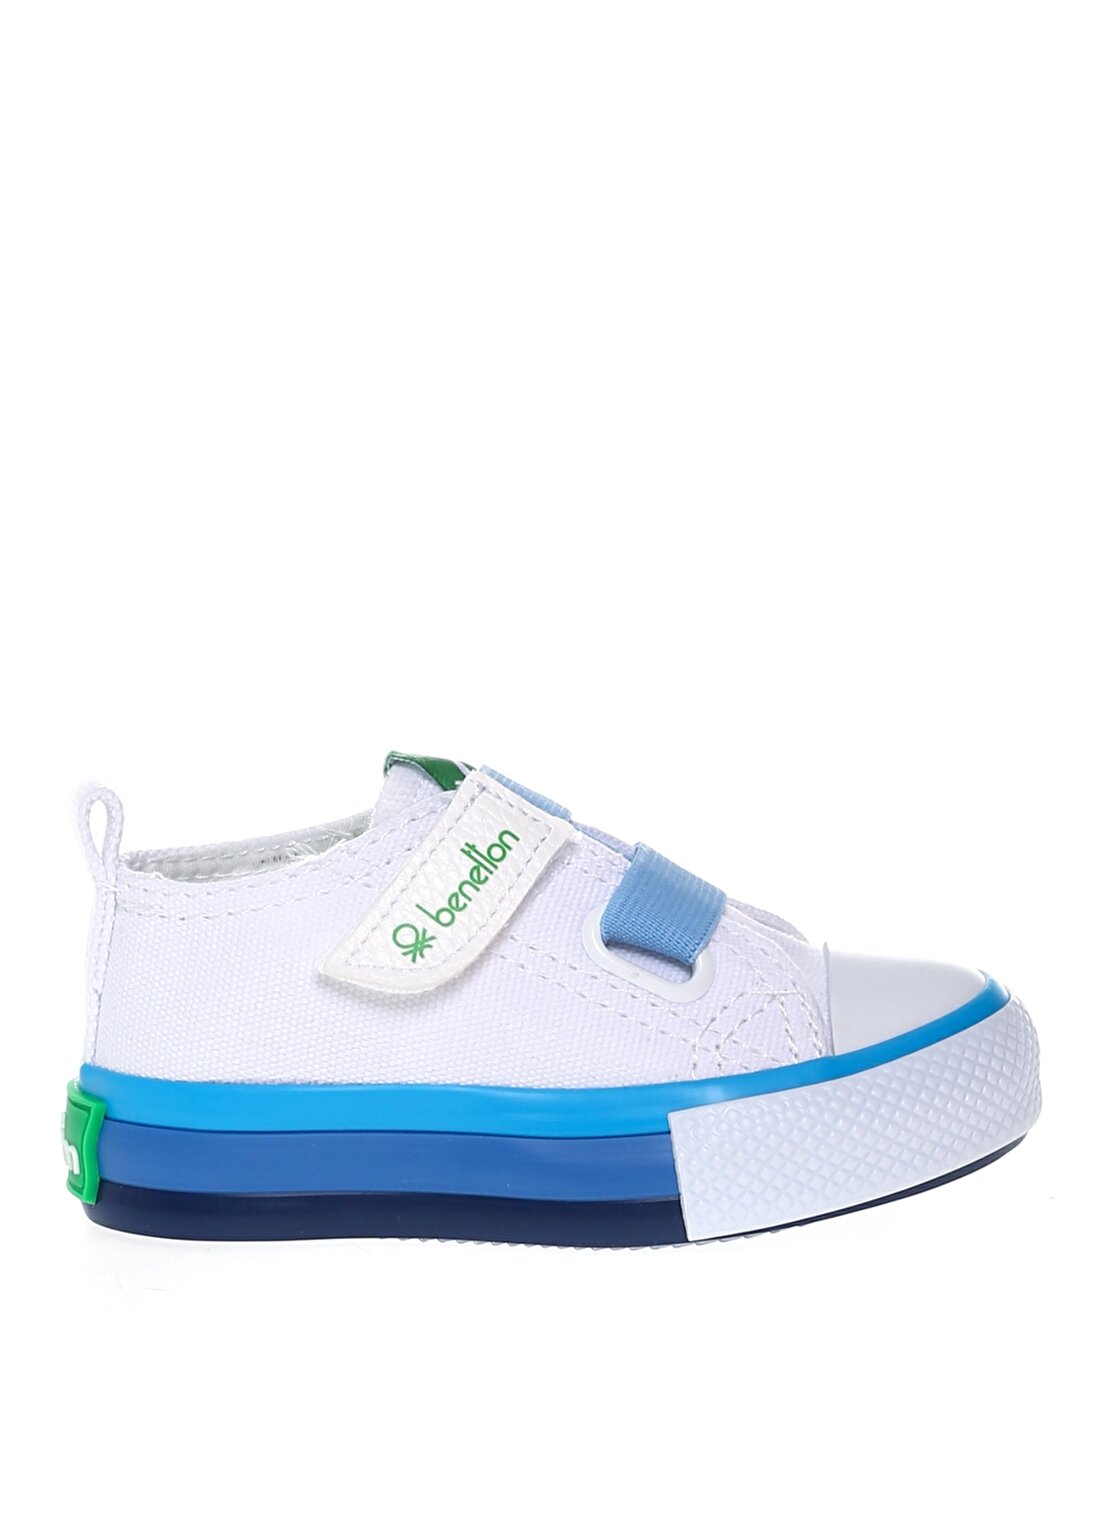 Benetton Beyaz - Mavi Bebek Yürüyüş Ayakkabısı BN-30648 688-Beyaz-Mavi